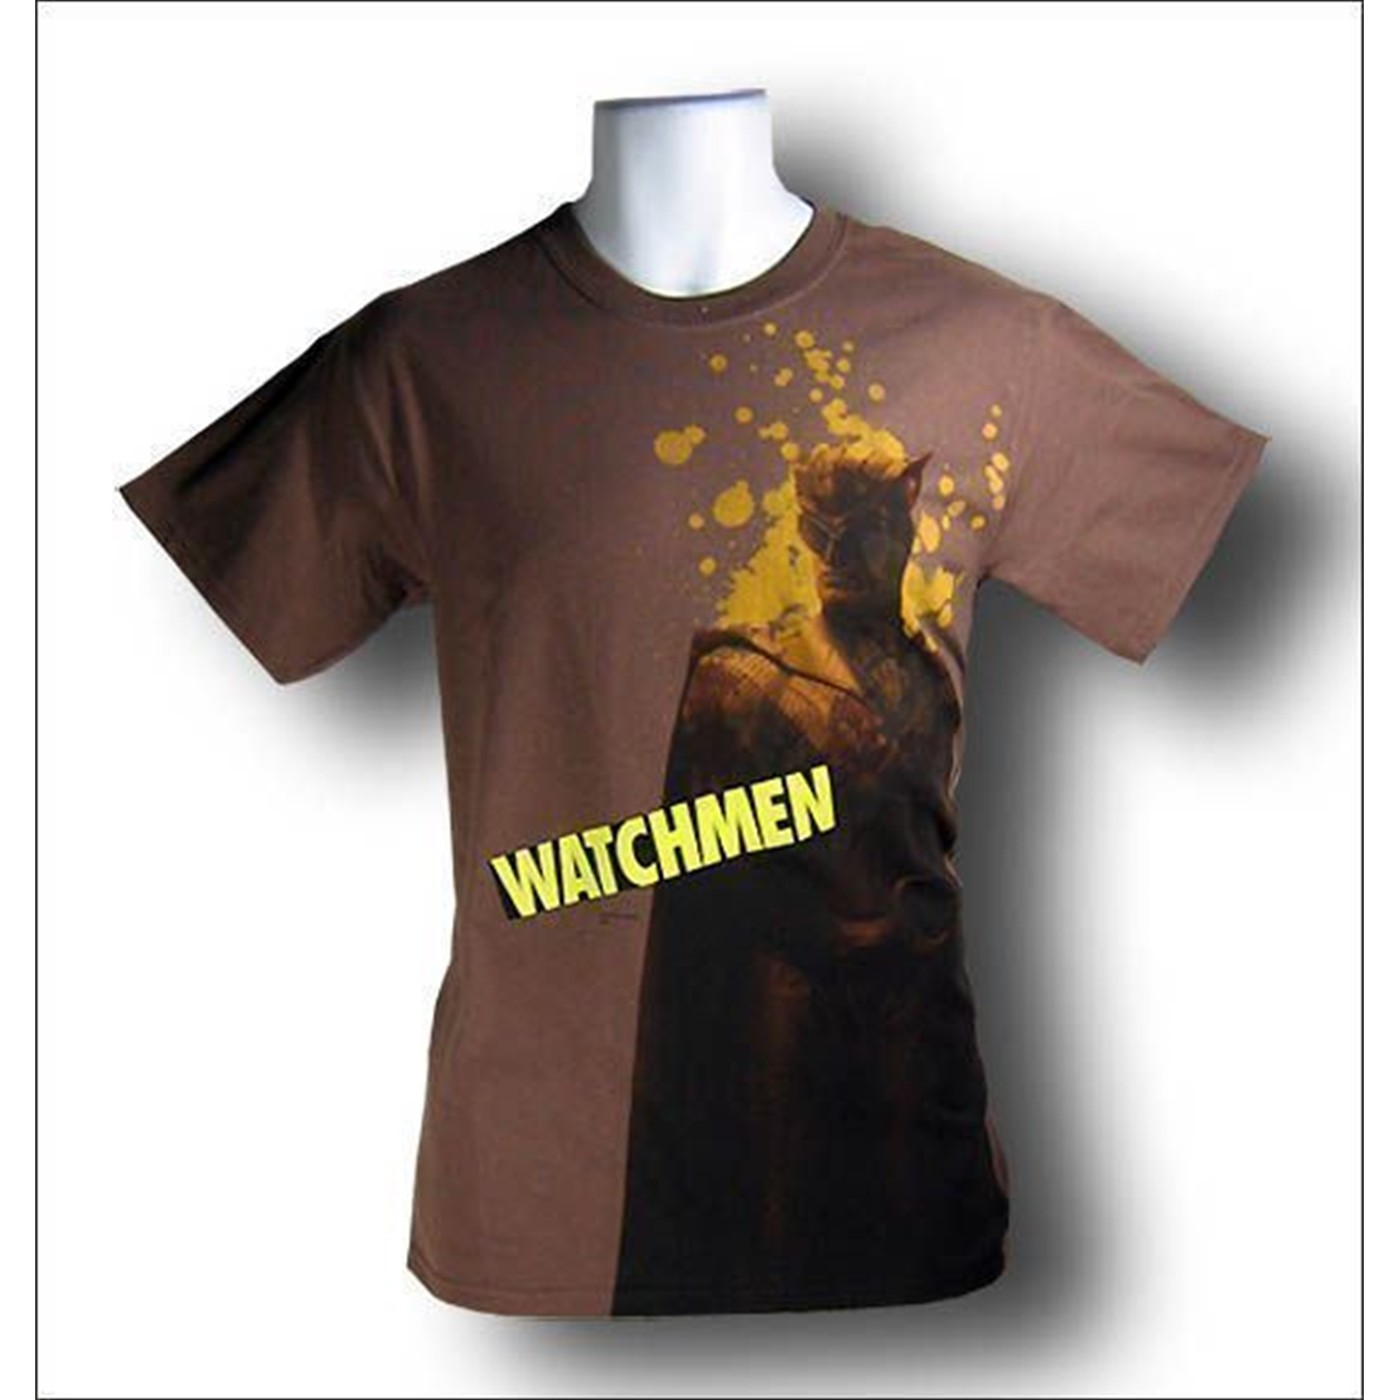 Watchmen Nite Owl T-Shirt